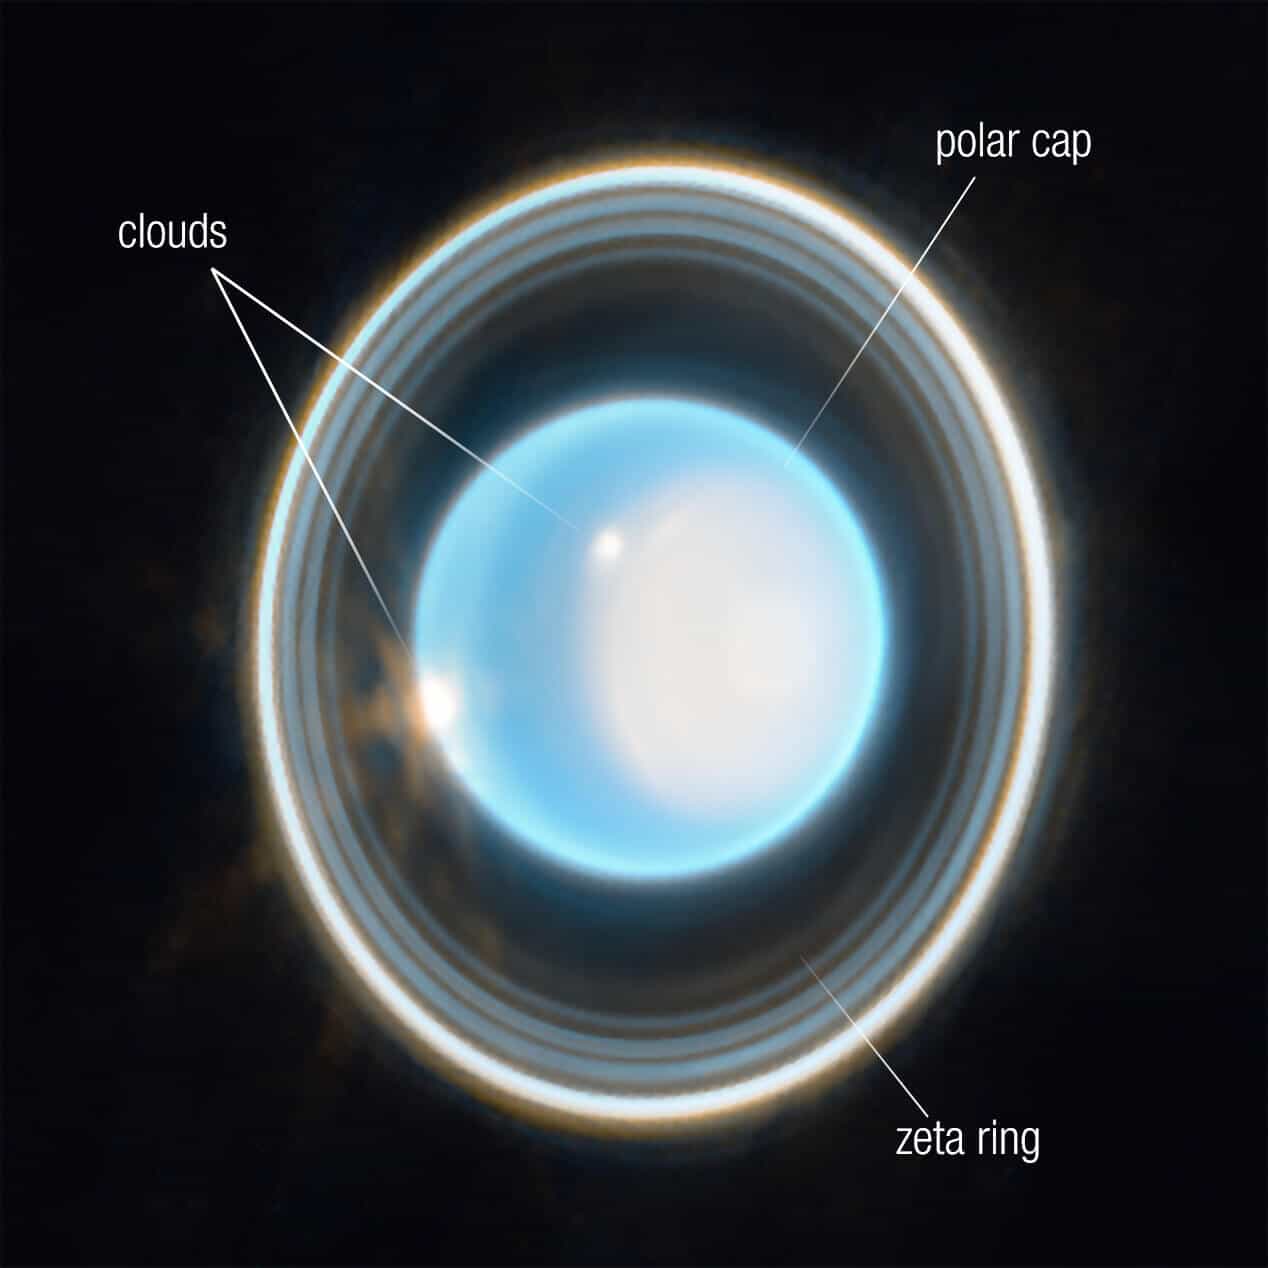 يجمع هذا التصوير بالأشعة تحت الحمراء من كاميرا الويب ذات الطول الموجي للأشعة تحت الحمراء القريبة (NIRCam) بيانات من مرشحين 1.4 و3.0 ميكرون، كما هو موضح هنا باللونين الأزرق والبرتقالي، على التوالي. يُظهر الكوكب لونًا أزرقًا في الصورة التي تم الحصول عليها بلون تمثيلي. مصدر الصورة: NASA، ESA، CSA، STScI، J. DePasquale (STScI)